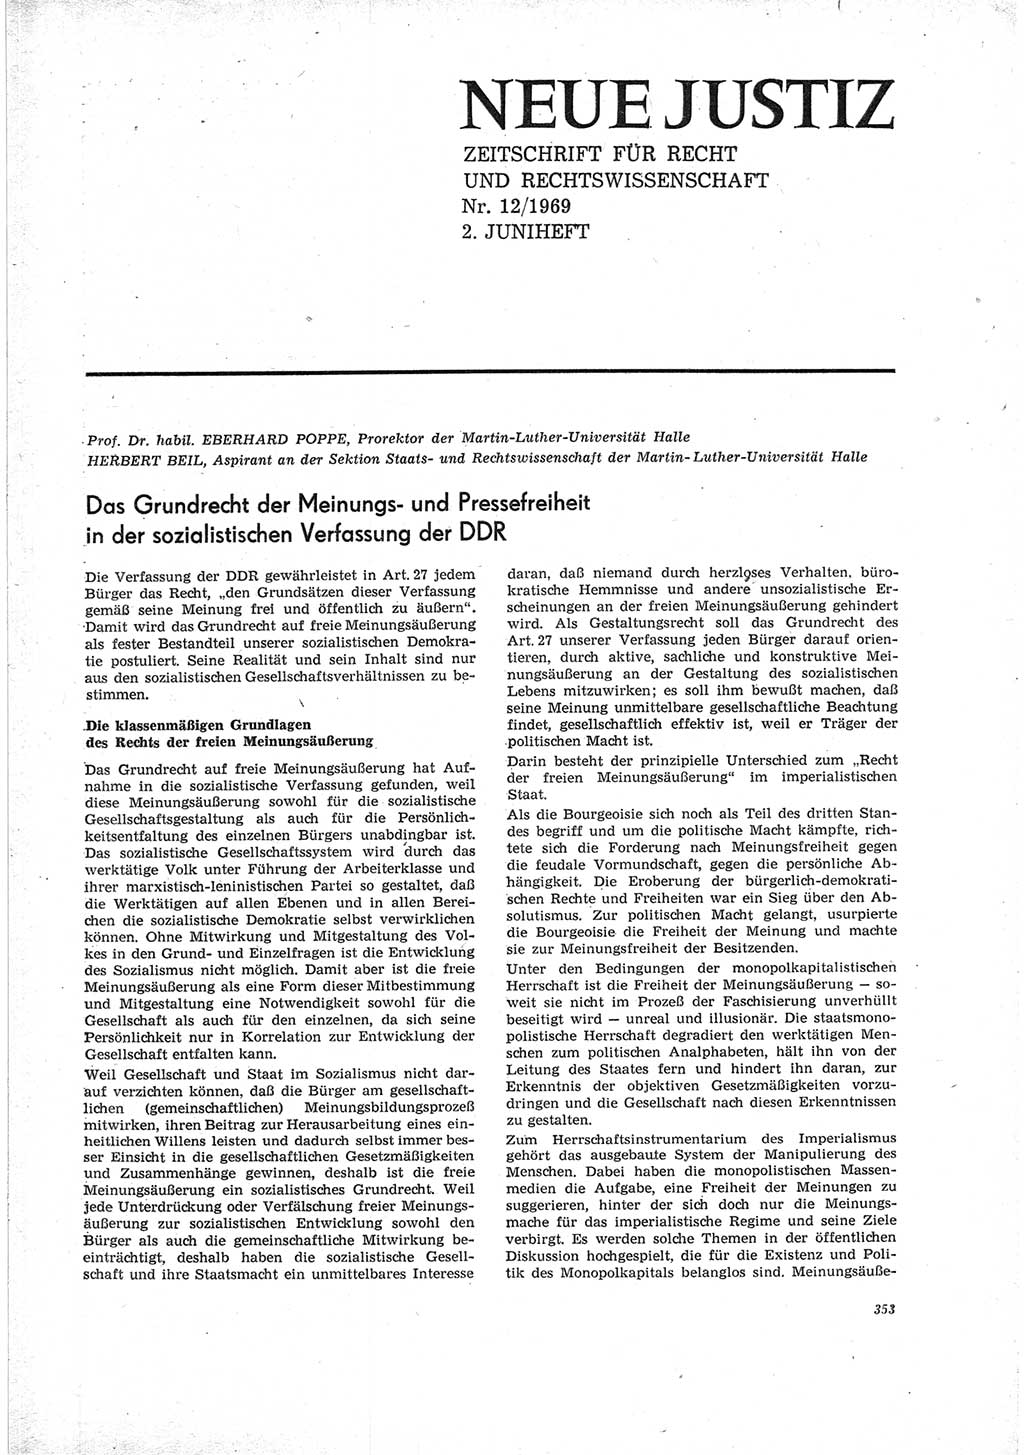 Neue Justiz (NJ), Zeitschrift für Recht und Rechtswissenschaft [Deutsche Demokratische Republik (DDR)], 23. Jahrgang 1969, Seite 353 (NJ DDR 1969, S. 353)